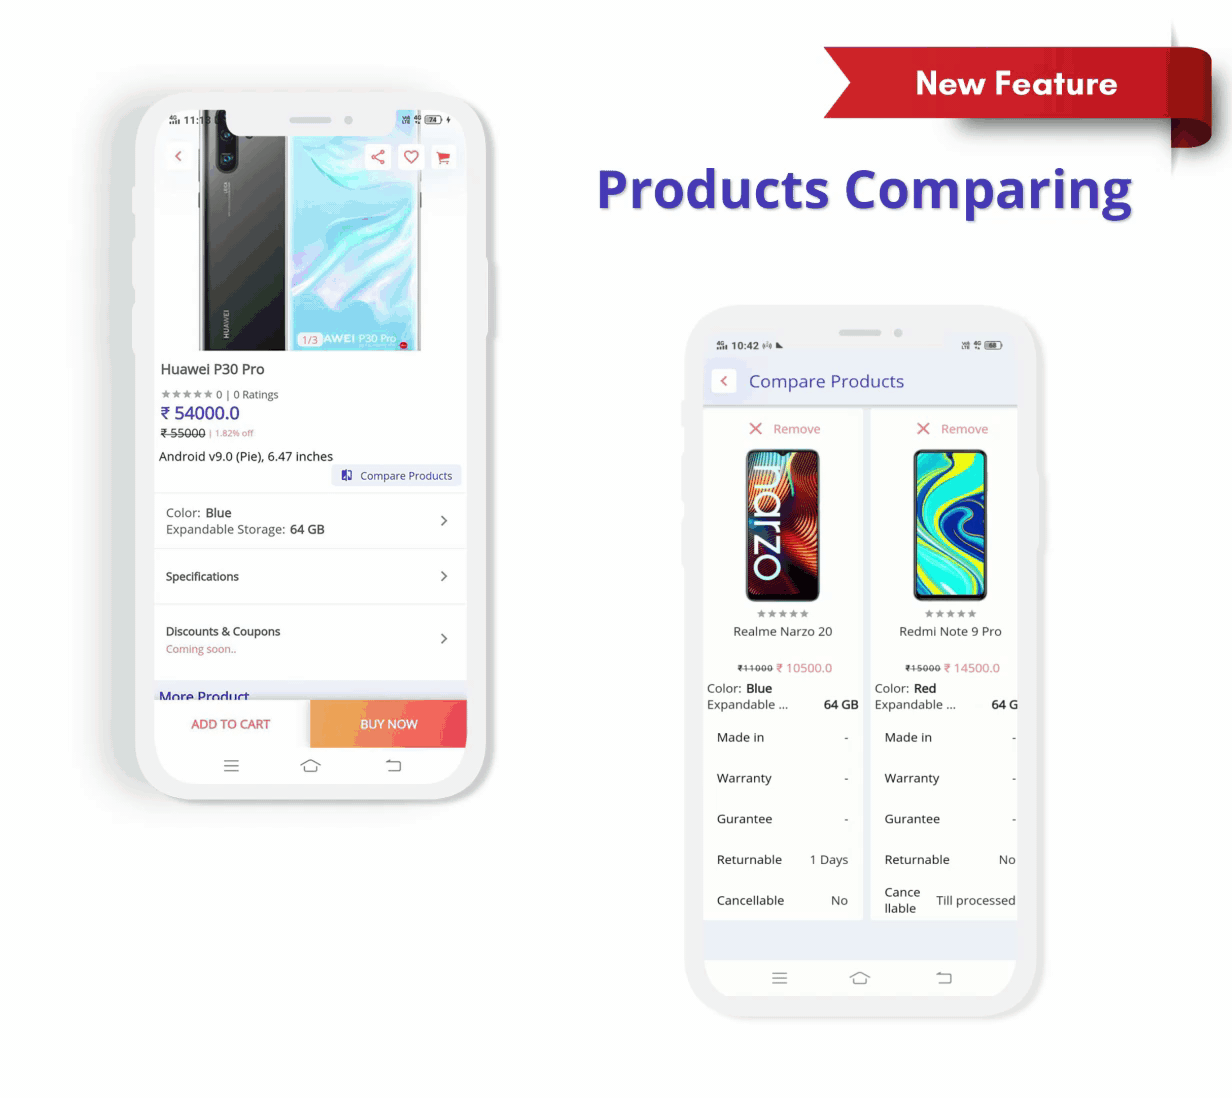 eShop - Flutter E-commerce Full App - 8